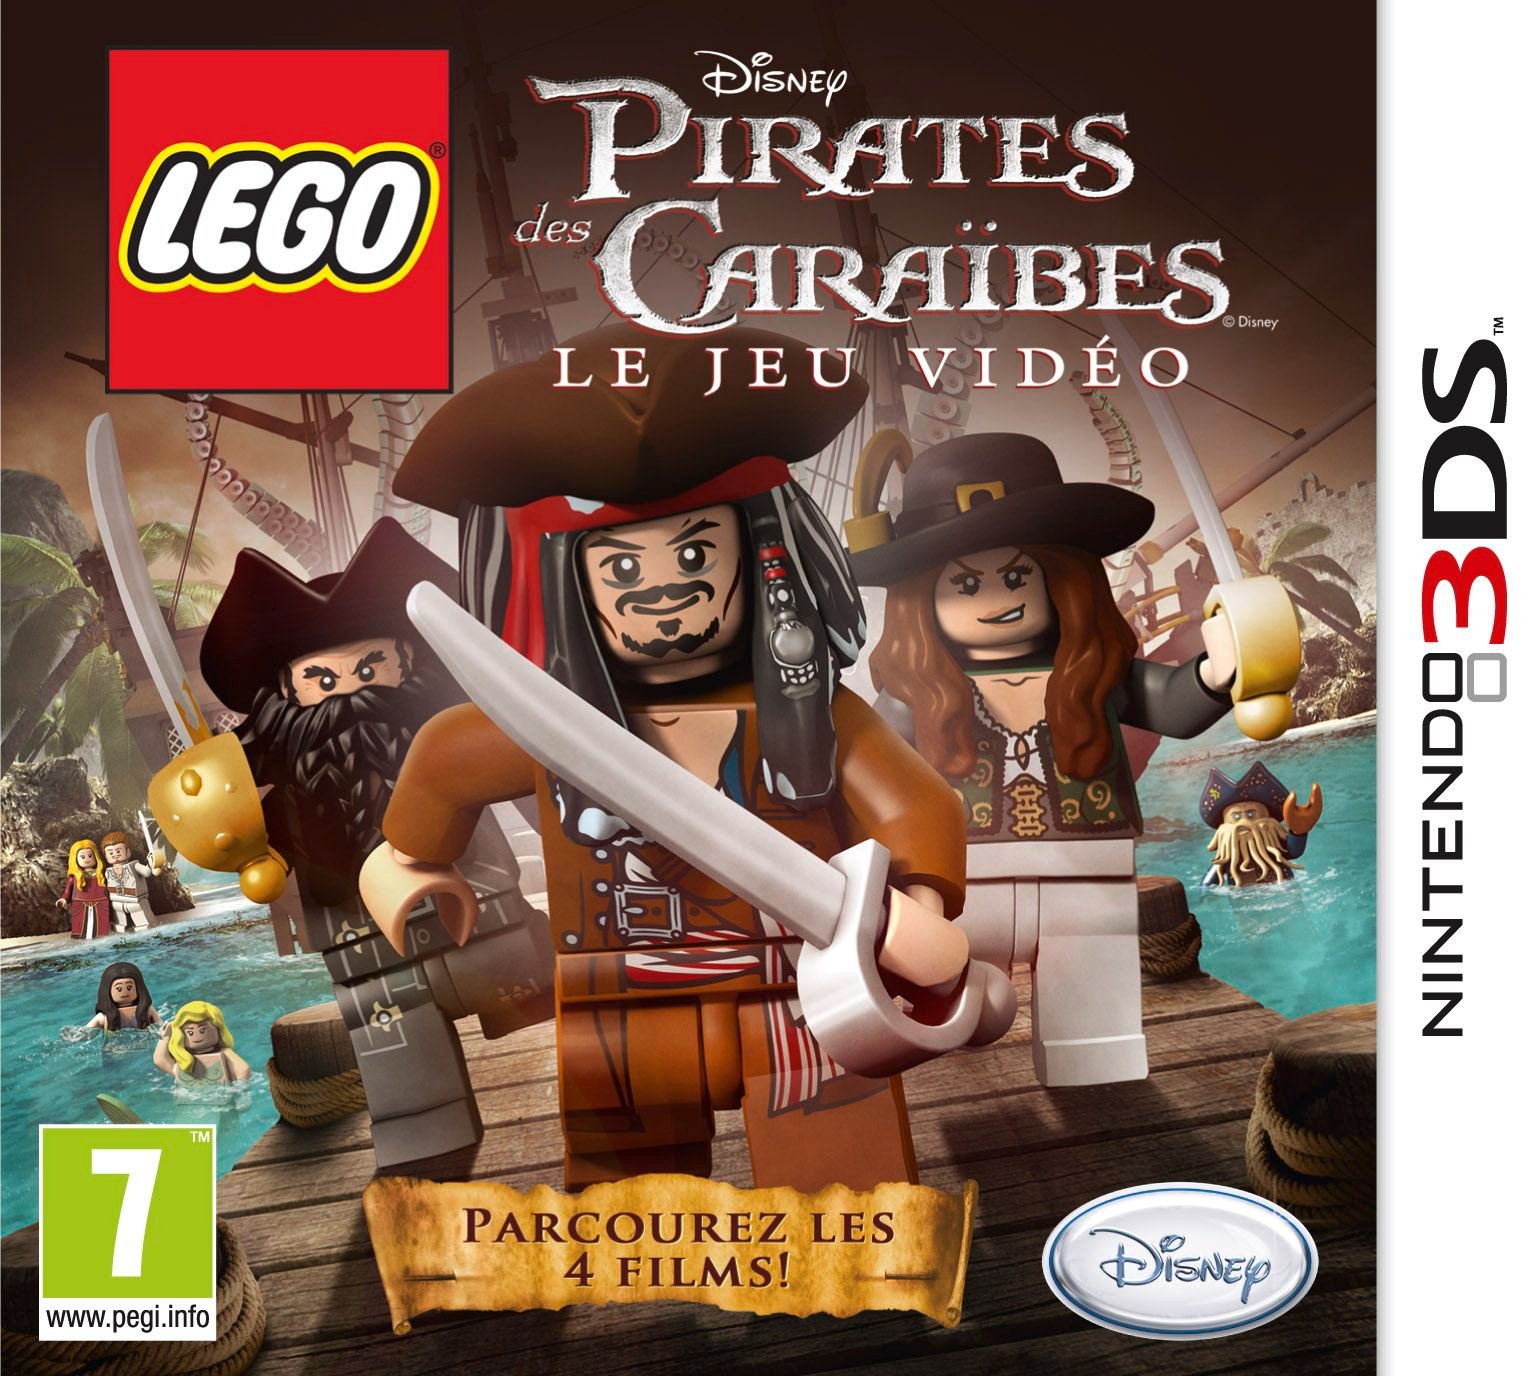 LEGO Pirates des Caraïbes : Le jeu vidéo